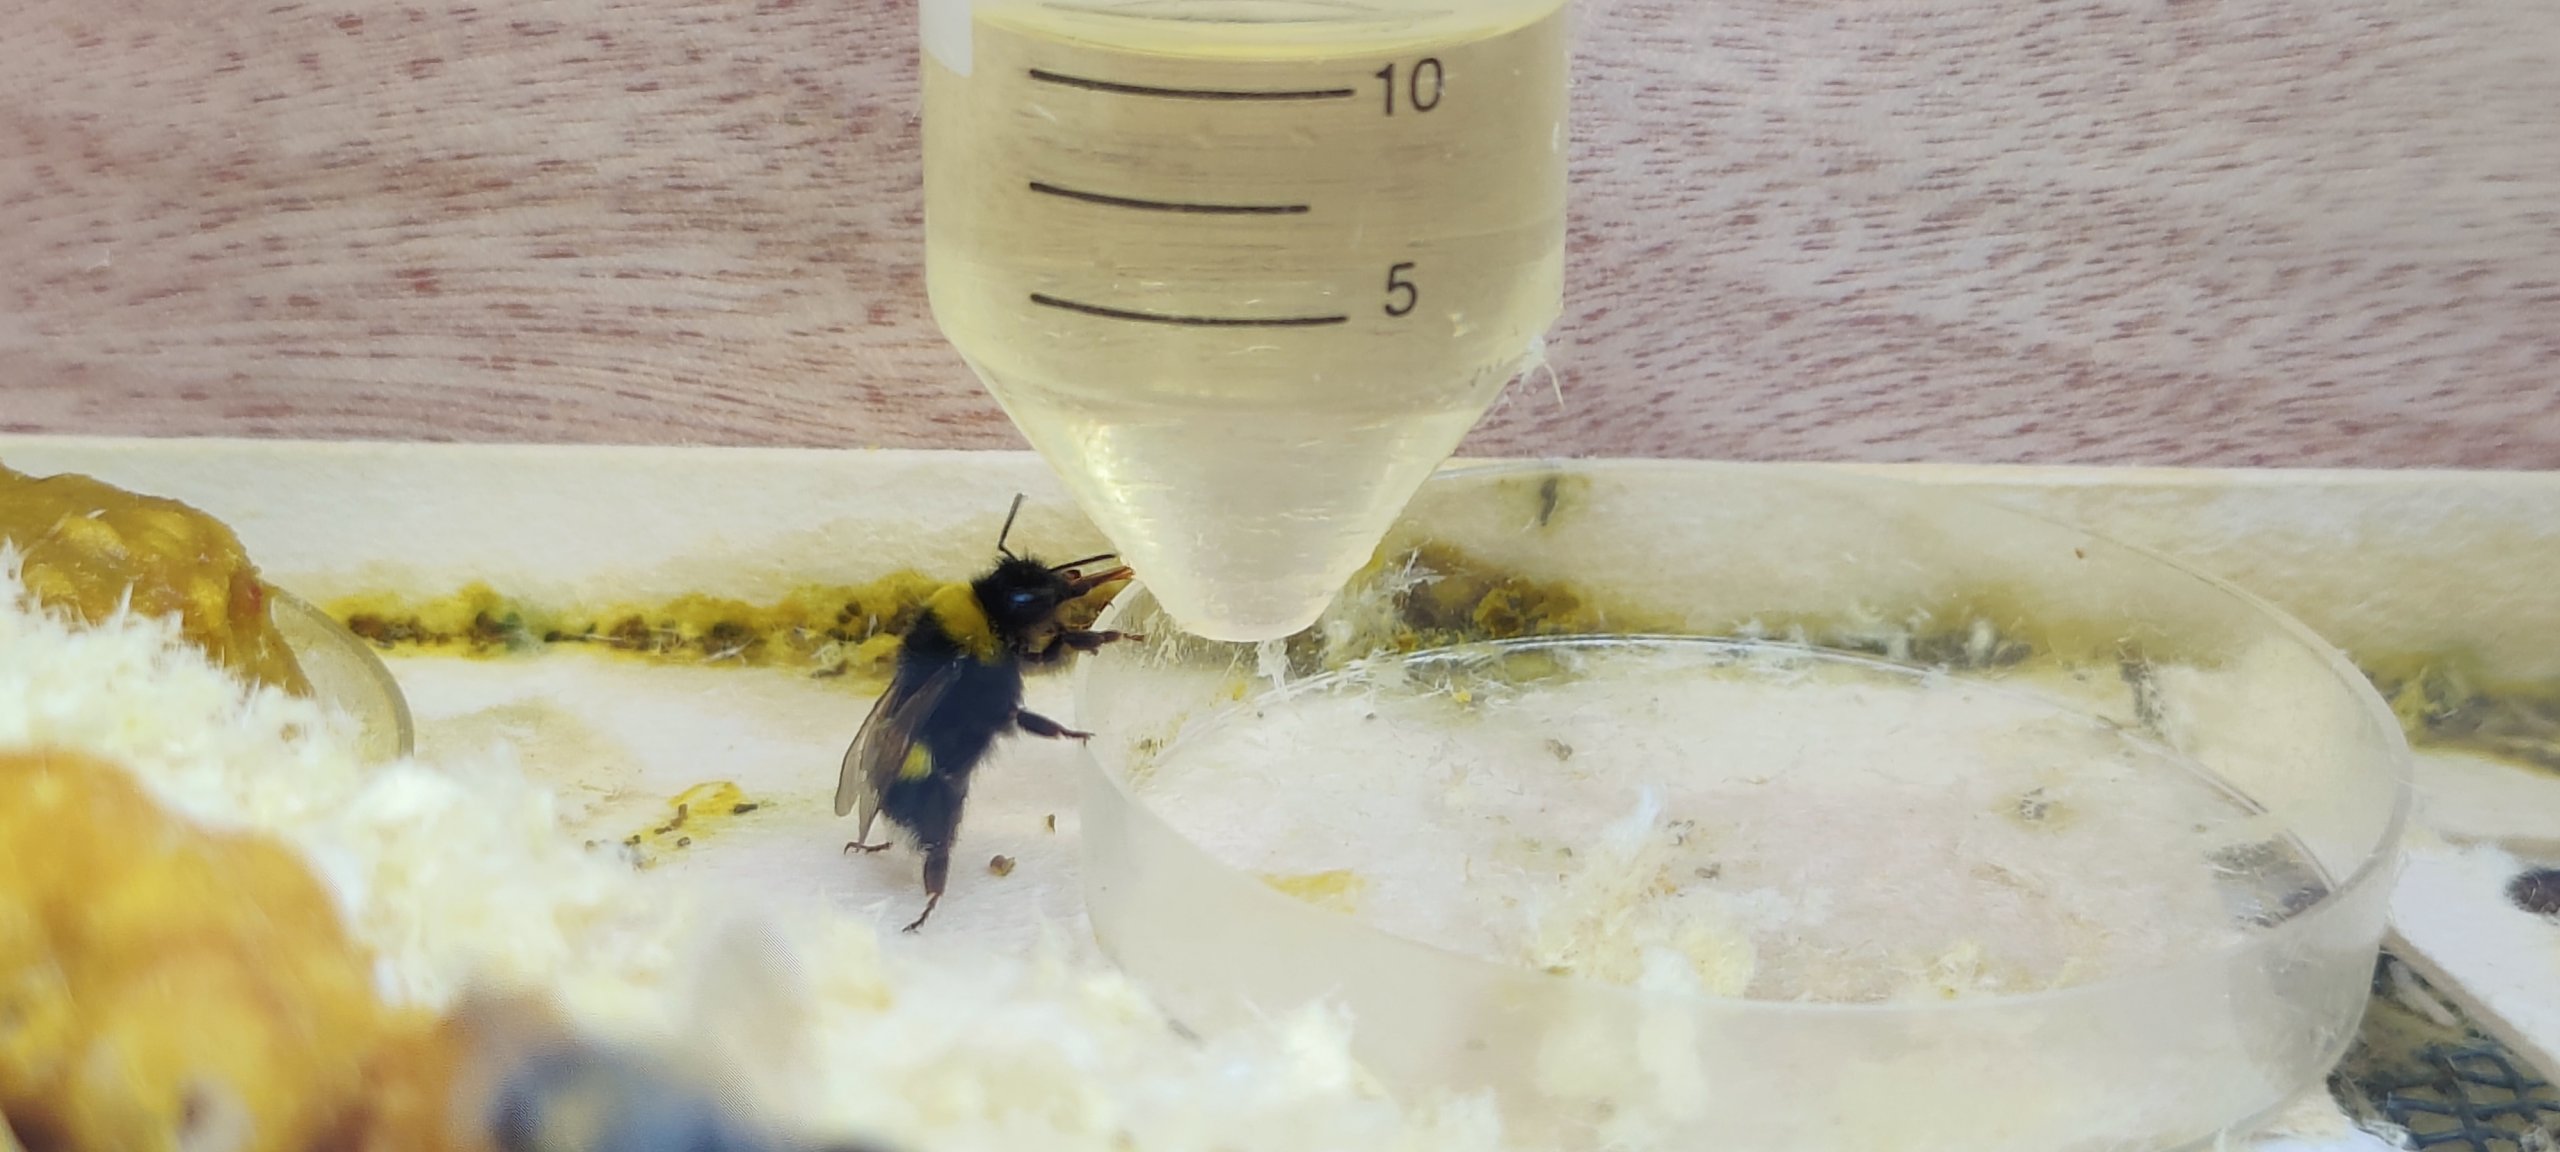 דבורי הבומבוס שותות ישר מהמבחנה. צילום אסף צדקה 2